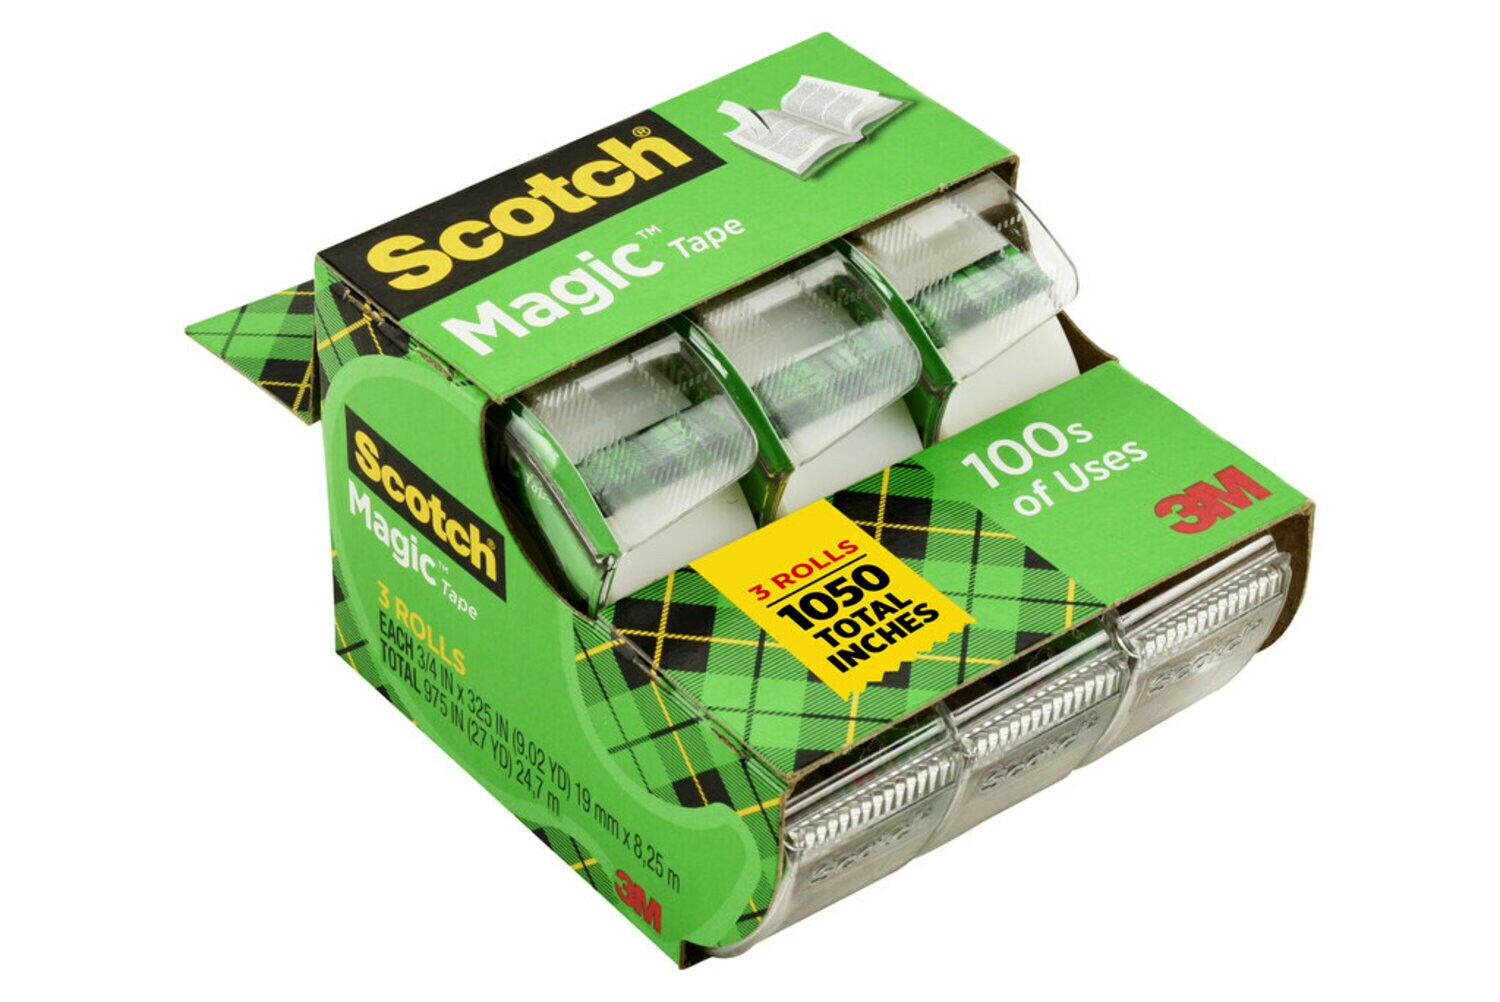 7010332317 - Scotch Magic Tape 3105 3/4 in x 300 in